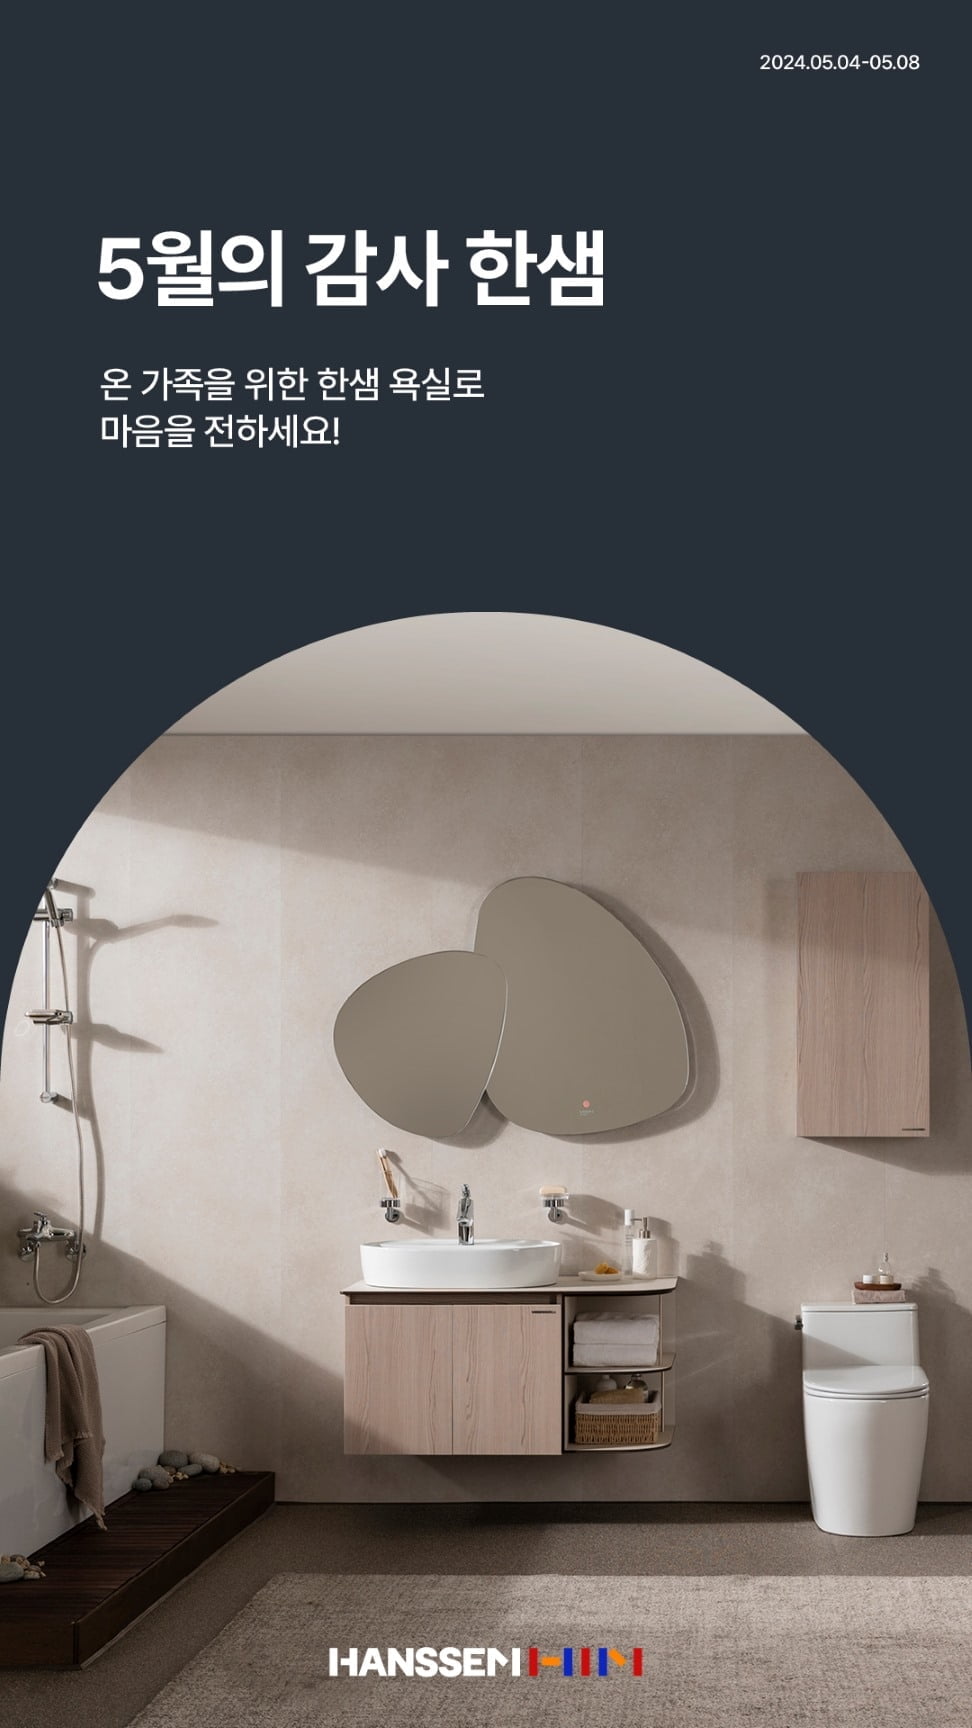 한샘, 가정의 달 기념 '부엌·욕실 할인 이벤트' 진행